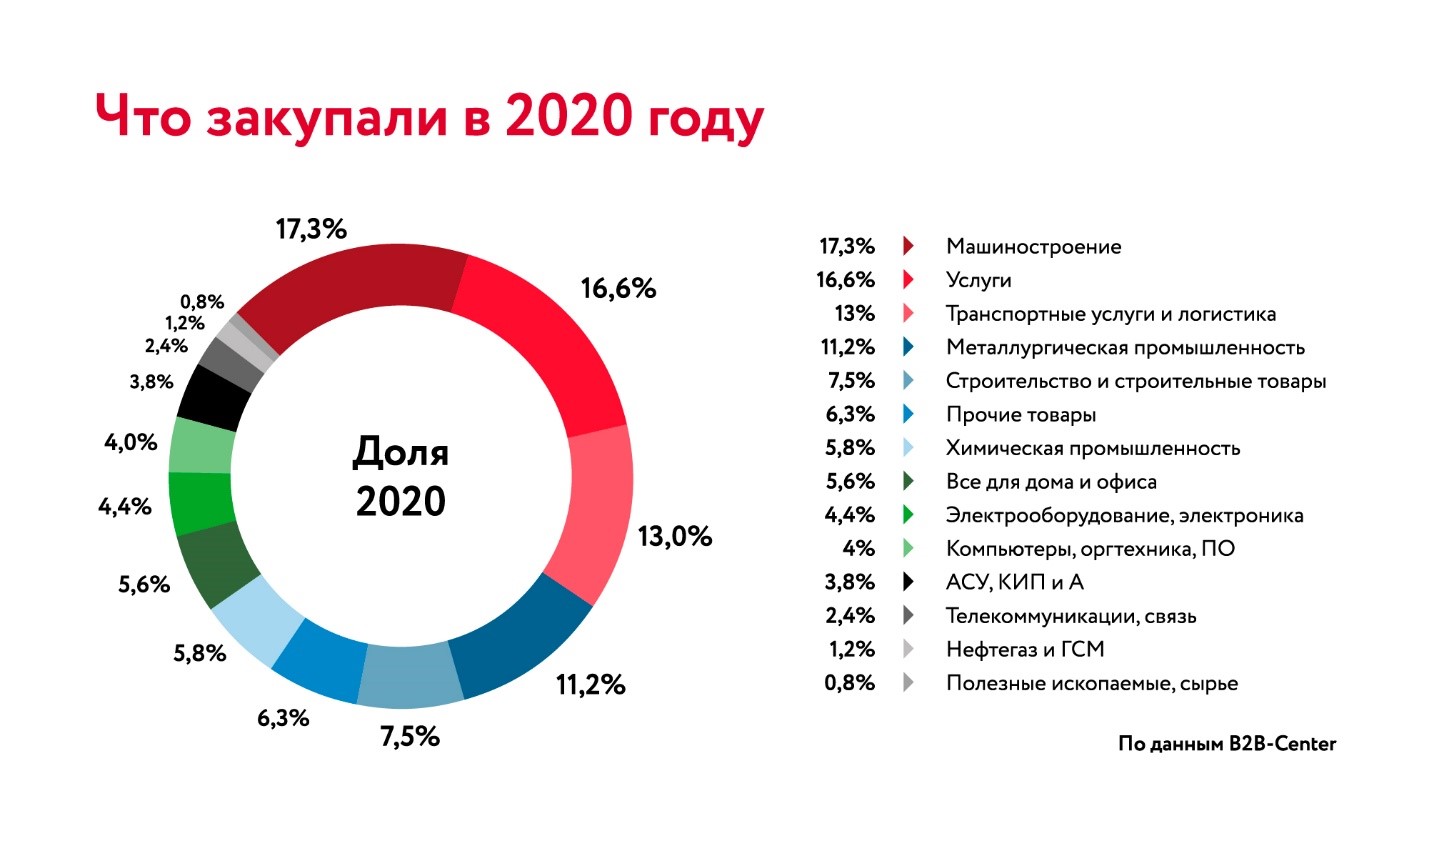 С какого января 2020 года. B2b компании в России. Закупки b2b. Цифровизация российского бизнеса в 2020 году. Объем государственных закупок по годам.